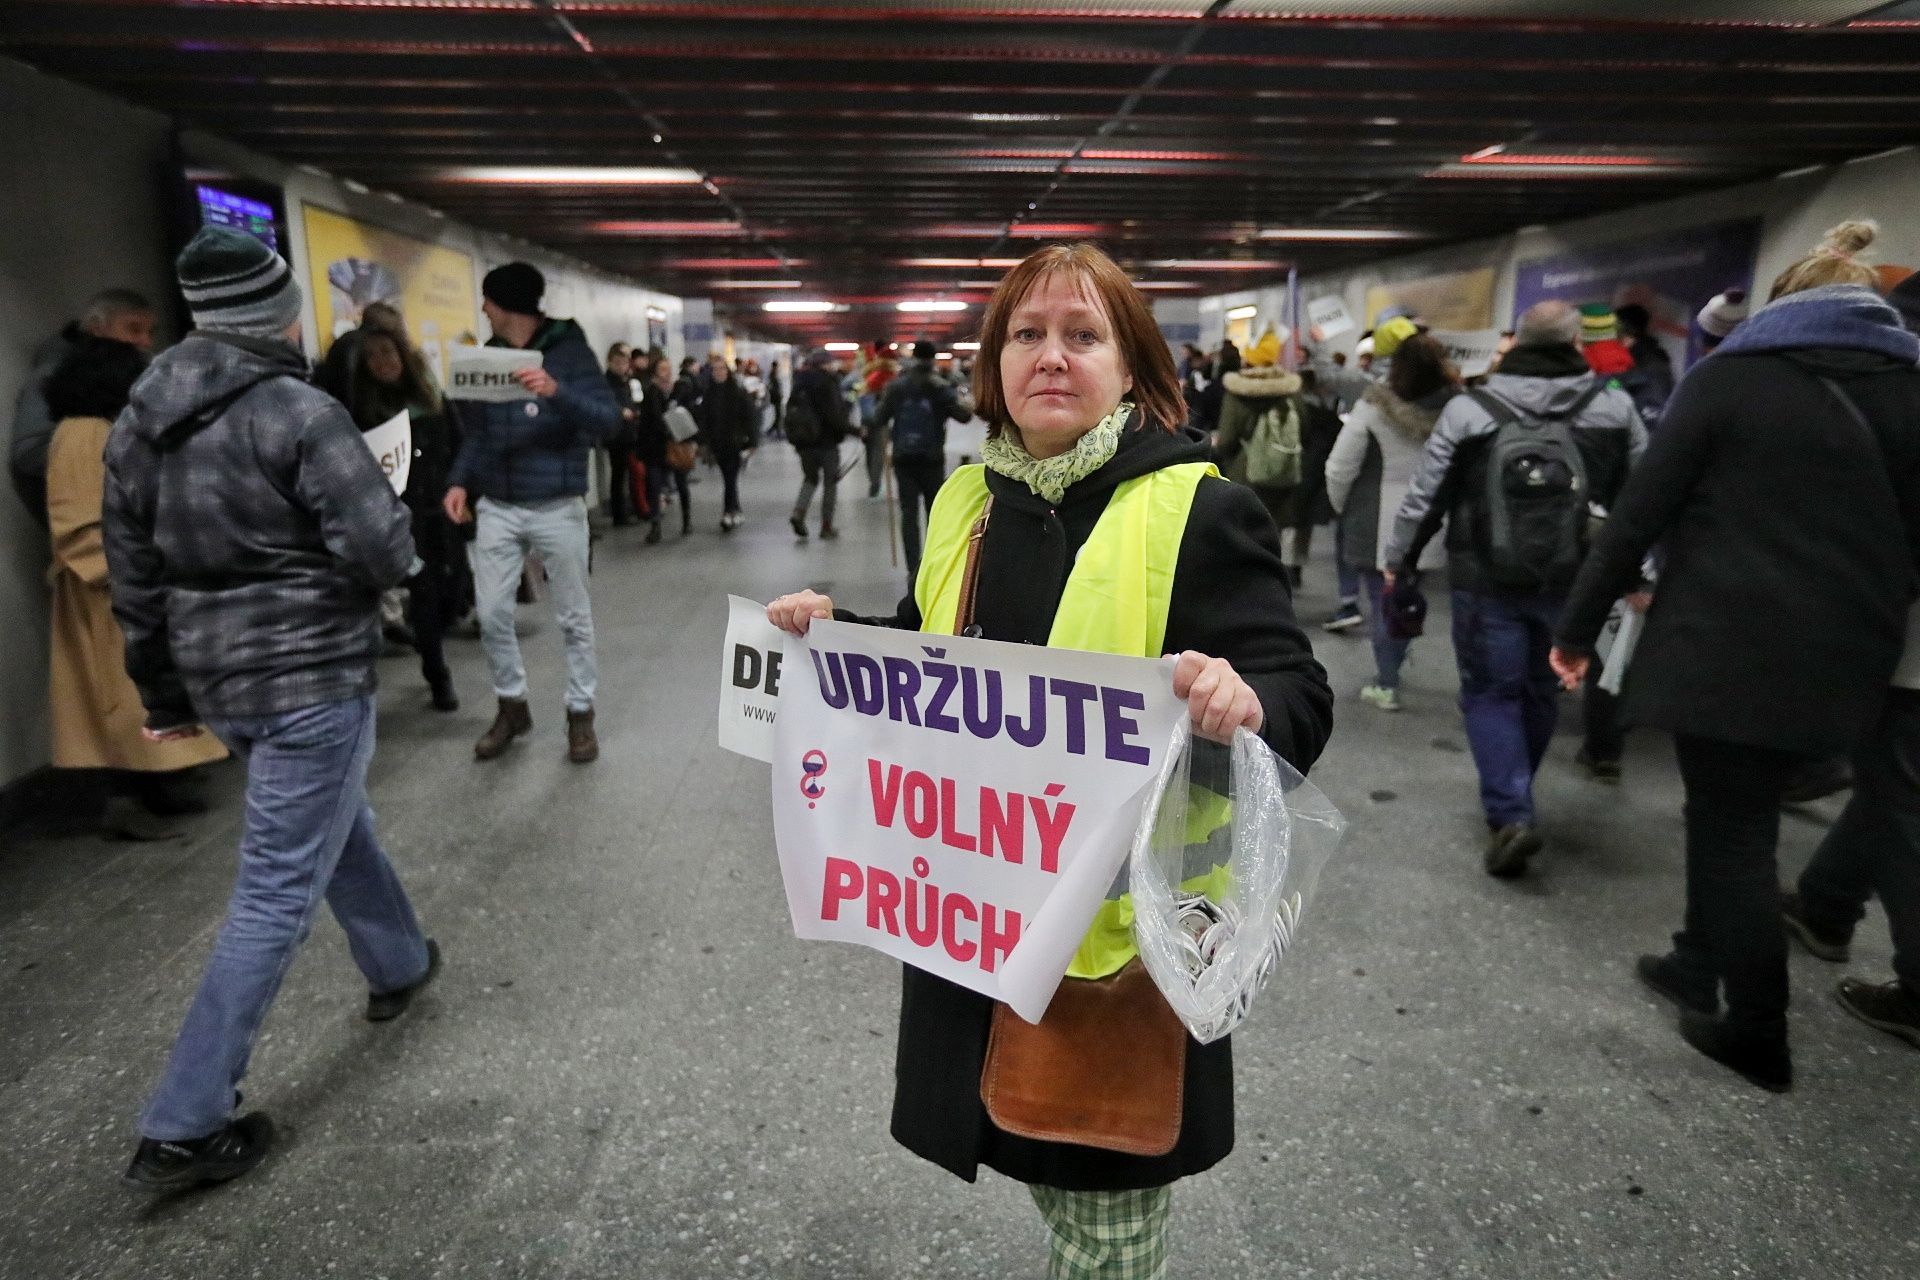 "Dodržujte volný průchod!" azaz, "Engedjék a szabad átjárást!" felirattal a civil szervezet egyik aktivistáját látják a prágai Főpályaudvar egyik aluljárójában. Fotó: Jakub Pilhal, Aktualne.cz, ČTK